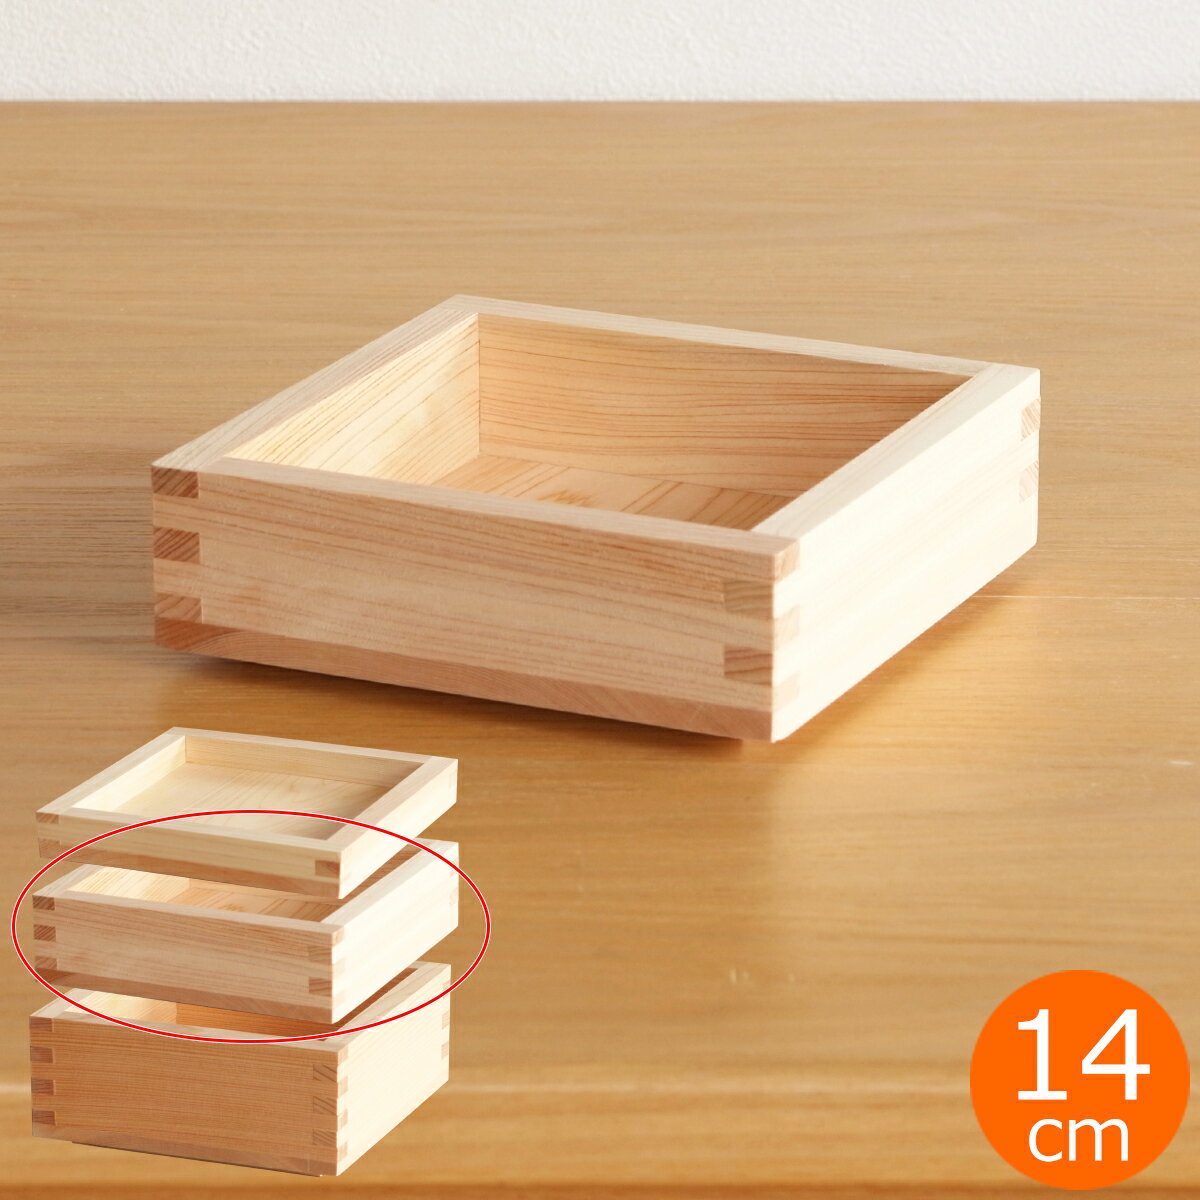 枡重 45 重箱 一段 14×14×4.5cm ばら売り 木製 日本製 おしゃれ ヤマサキデザインワークス ヒノキ YAMASAKI DESIGN WORKS